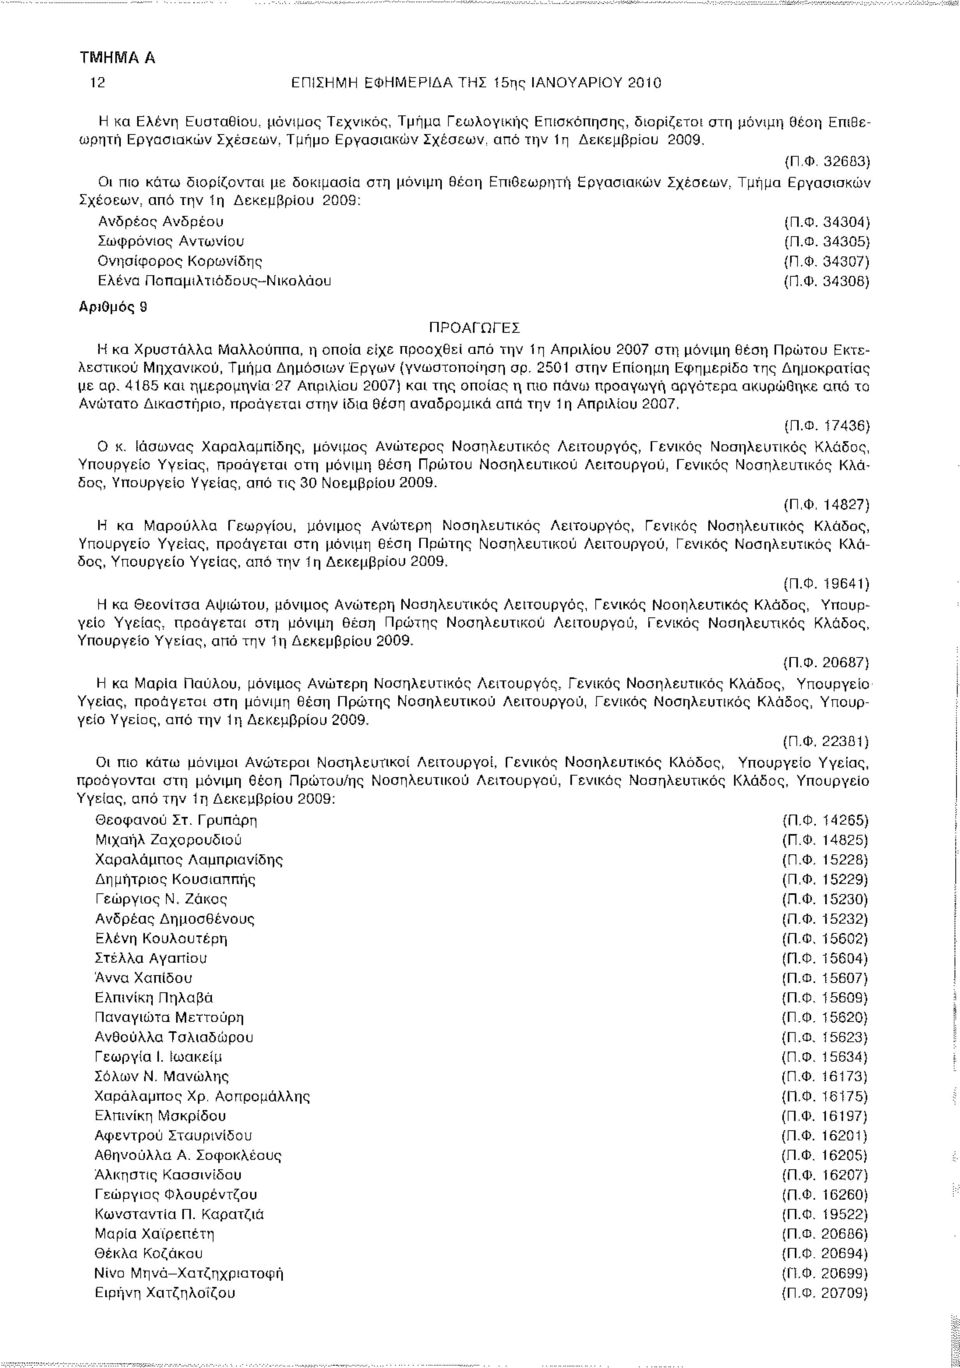 Φ. 34305) Ονησίφορος Κορωνίδης (Π.Φ. 34307) Ελένα Παπαμιλτιάδους-Νικολάου (Π.Φ. 34308) Αριθμός 9 ΠΡΟΑΓΩΓΕΣ Η κα Χρυστάλλα Μαλλούππα, η οποία είχε προαχθεί από την 1η Απριλίου 2007 στη μόνιμη θέση Πρώτου Εκτελεστικού Μηχανικού, Τμήμα Δημόσιων Εργων (γνωστοποίηση αρ.